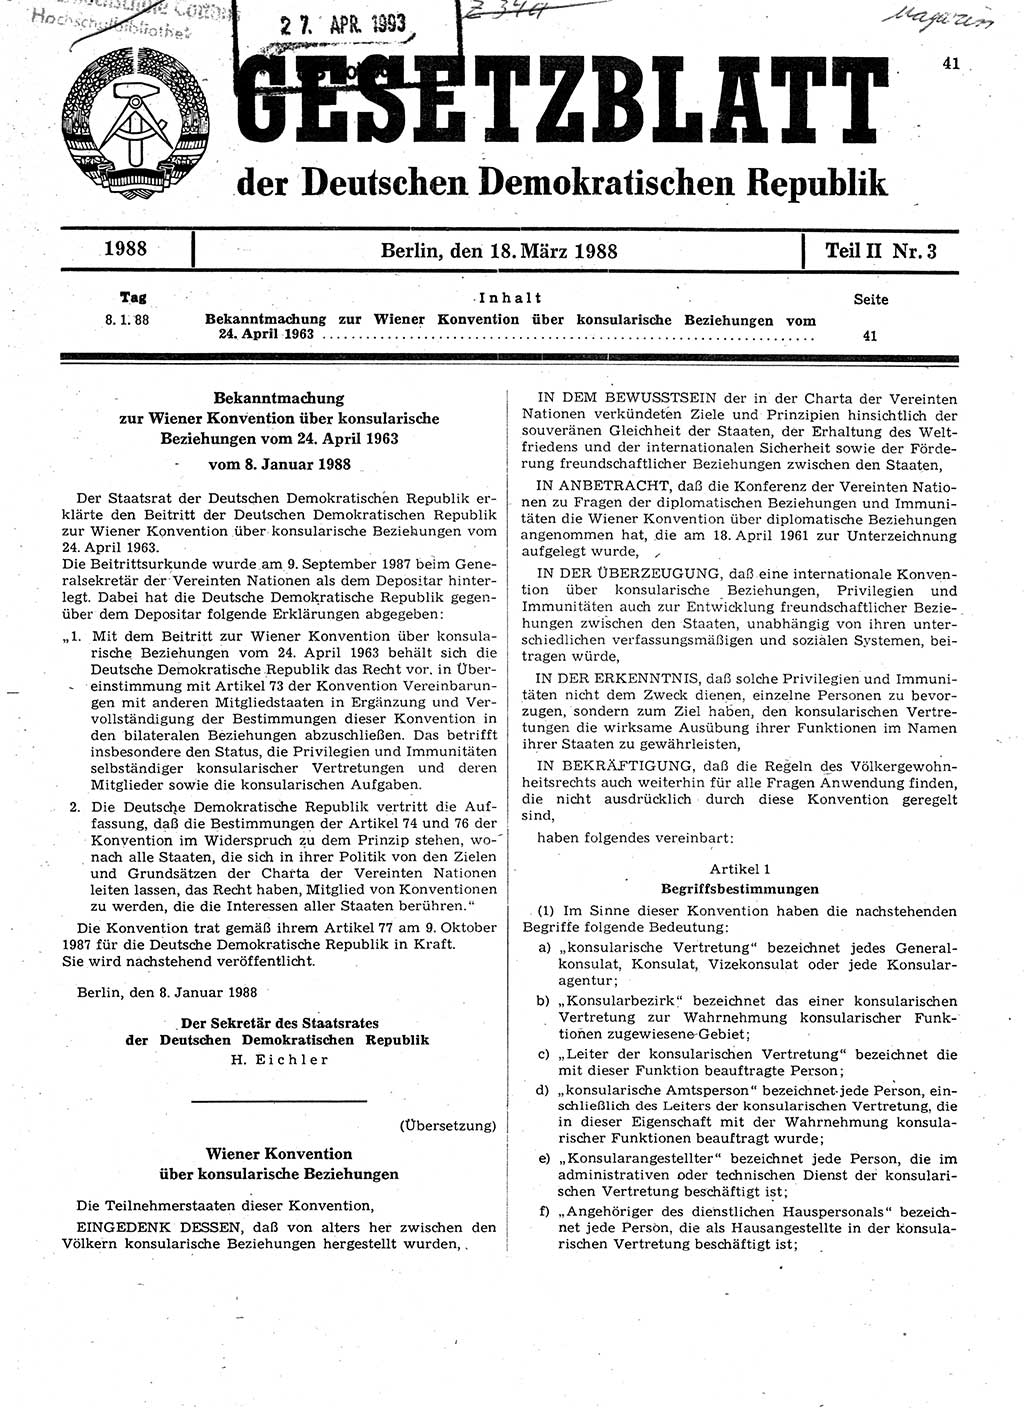 Gesetzblatt (GBl.) der Deutschen Demokratischen Republik (DDR) Teil ⅠⅠ 1988, Seite 41 (GBl. DDR ⅠⅠ 1988, S. 41)